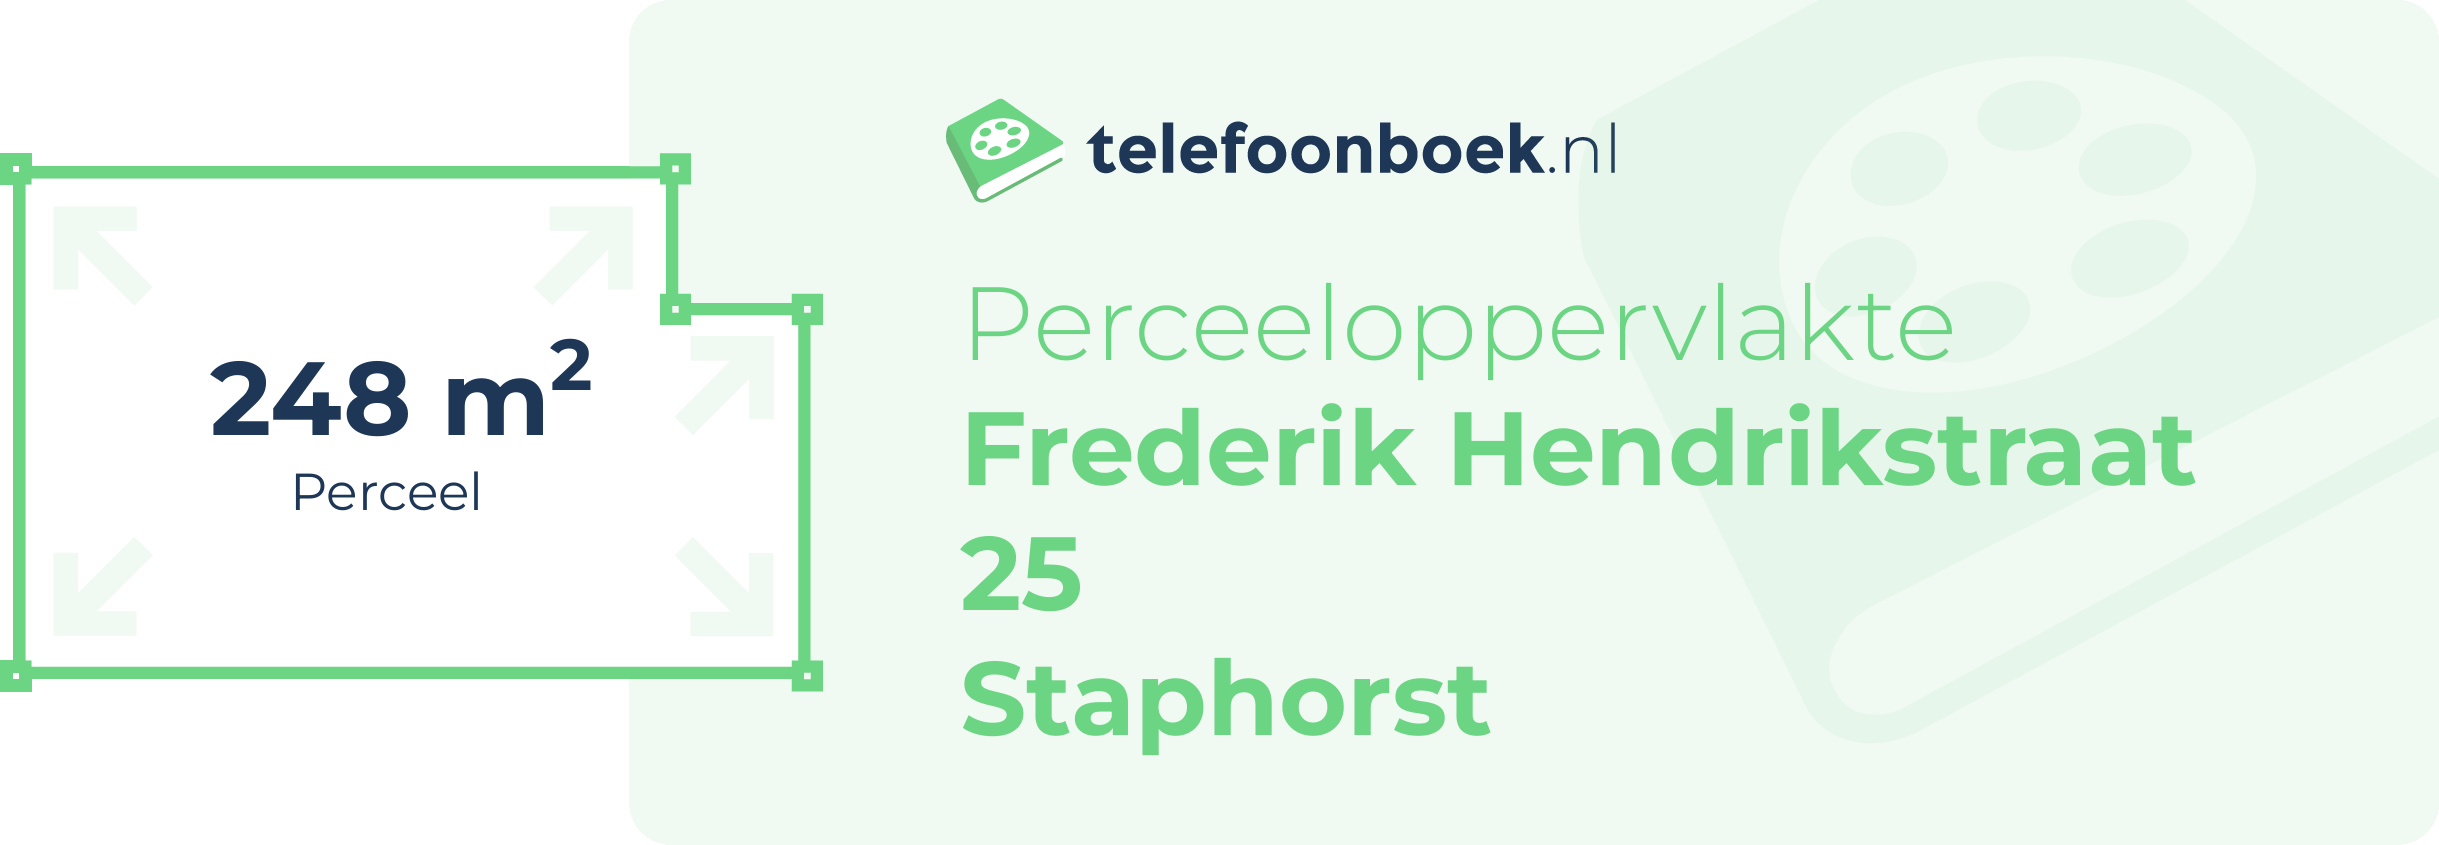 Perceeloppervlakte Frederik Hendrikstraat 25 Staphorst